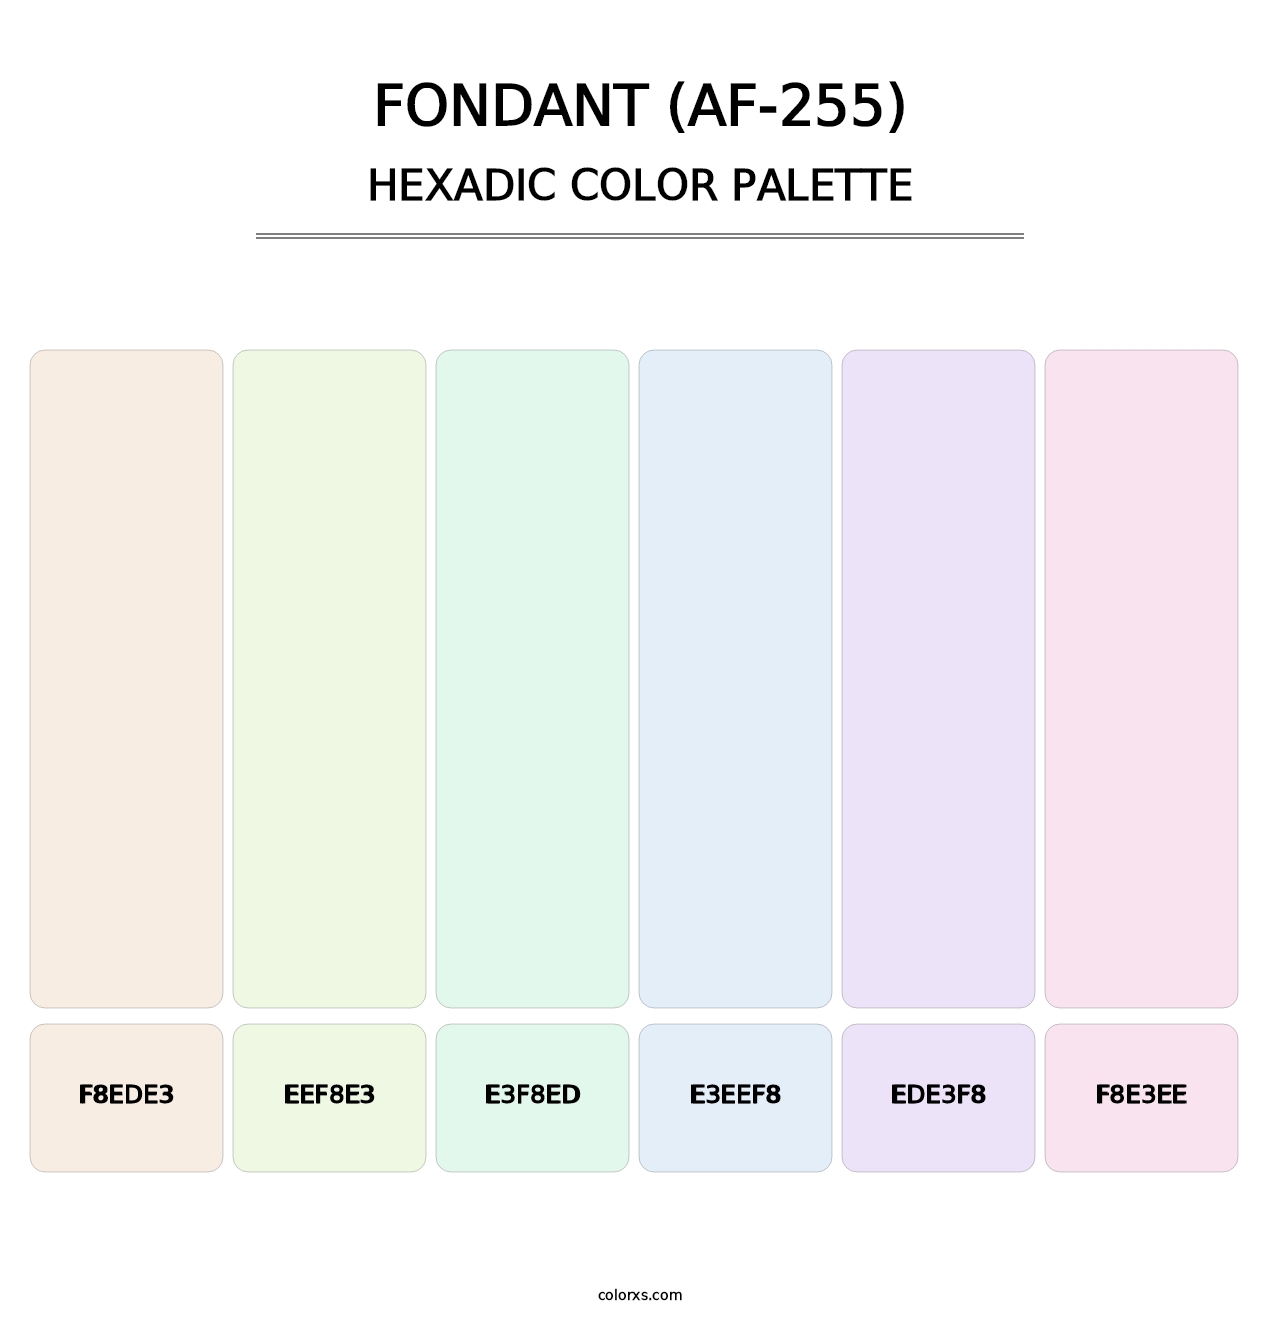 Fondant (AF-255) - Hexadic Color Palette